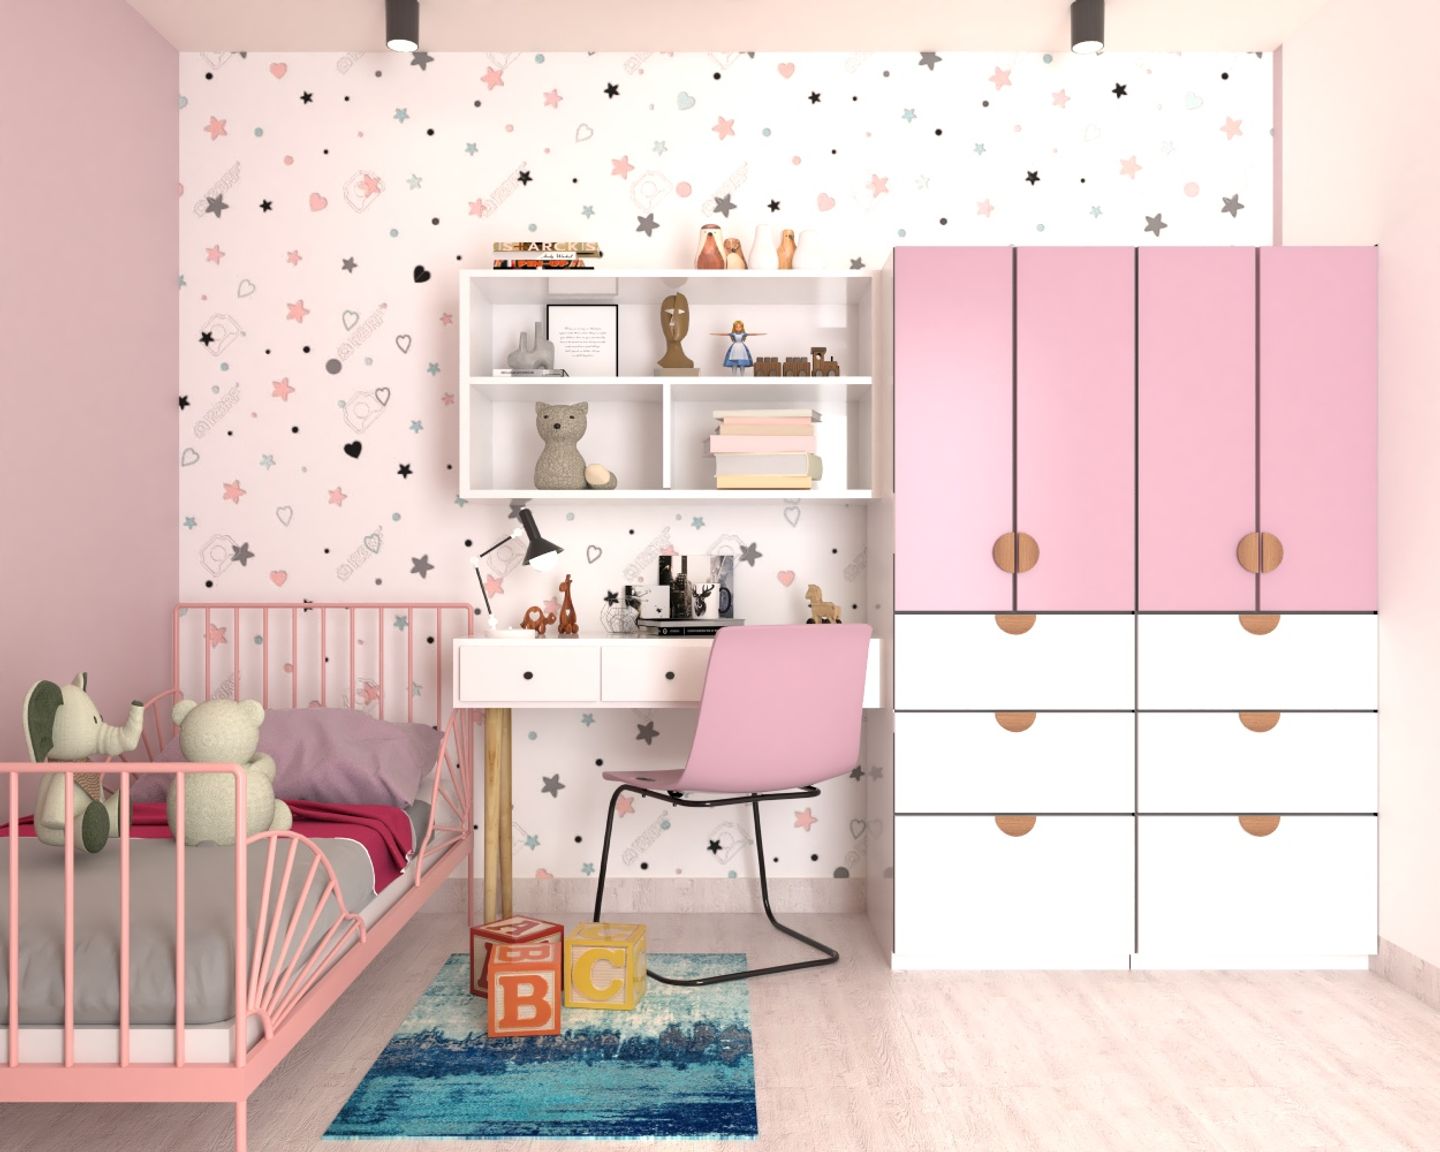 Patterned Wallpaper Design For Kids' Bedrooms - Livspace